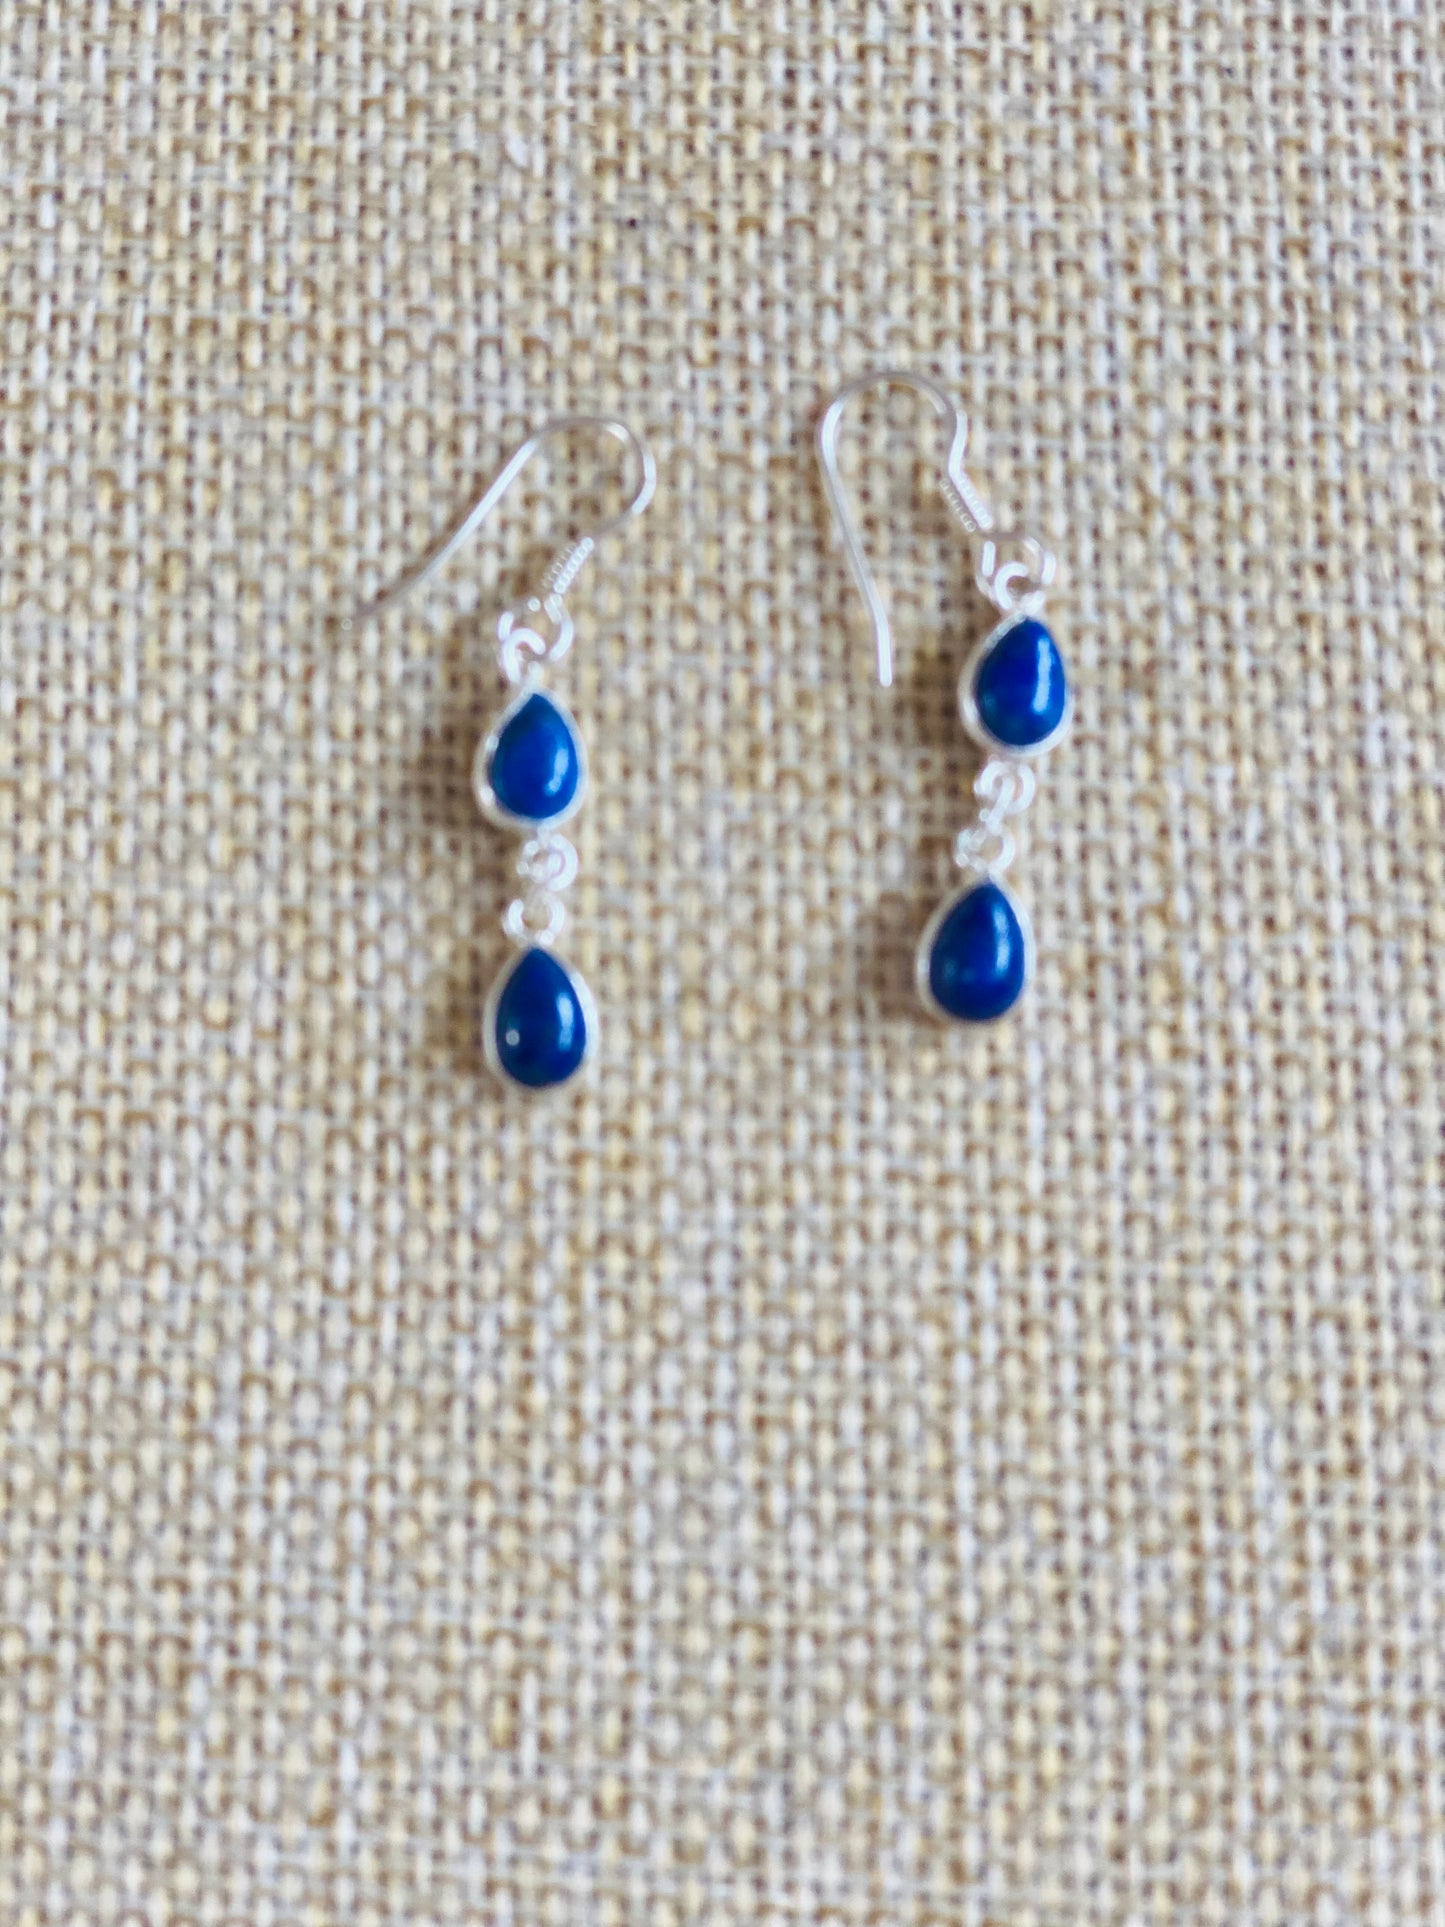 Lapis Lazuli Earrings Dainty Tear drop Sterling Silver